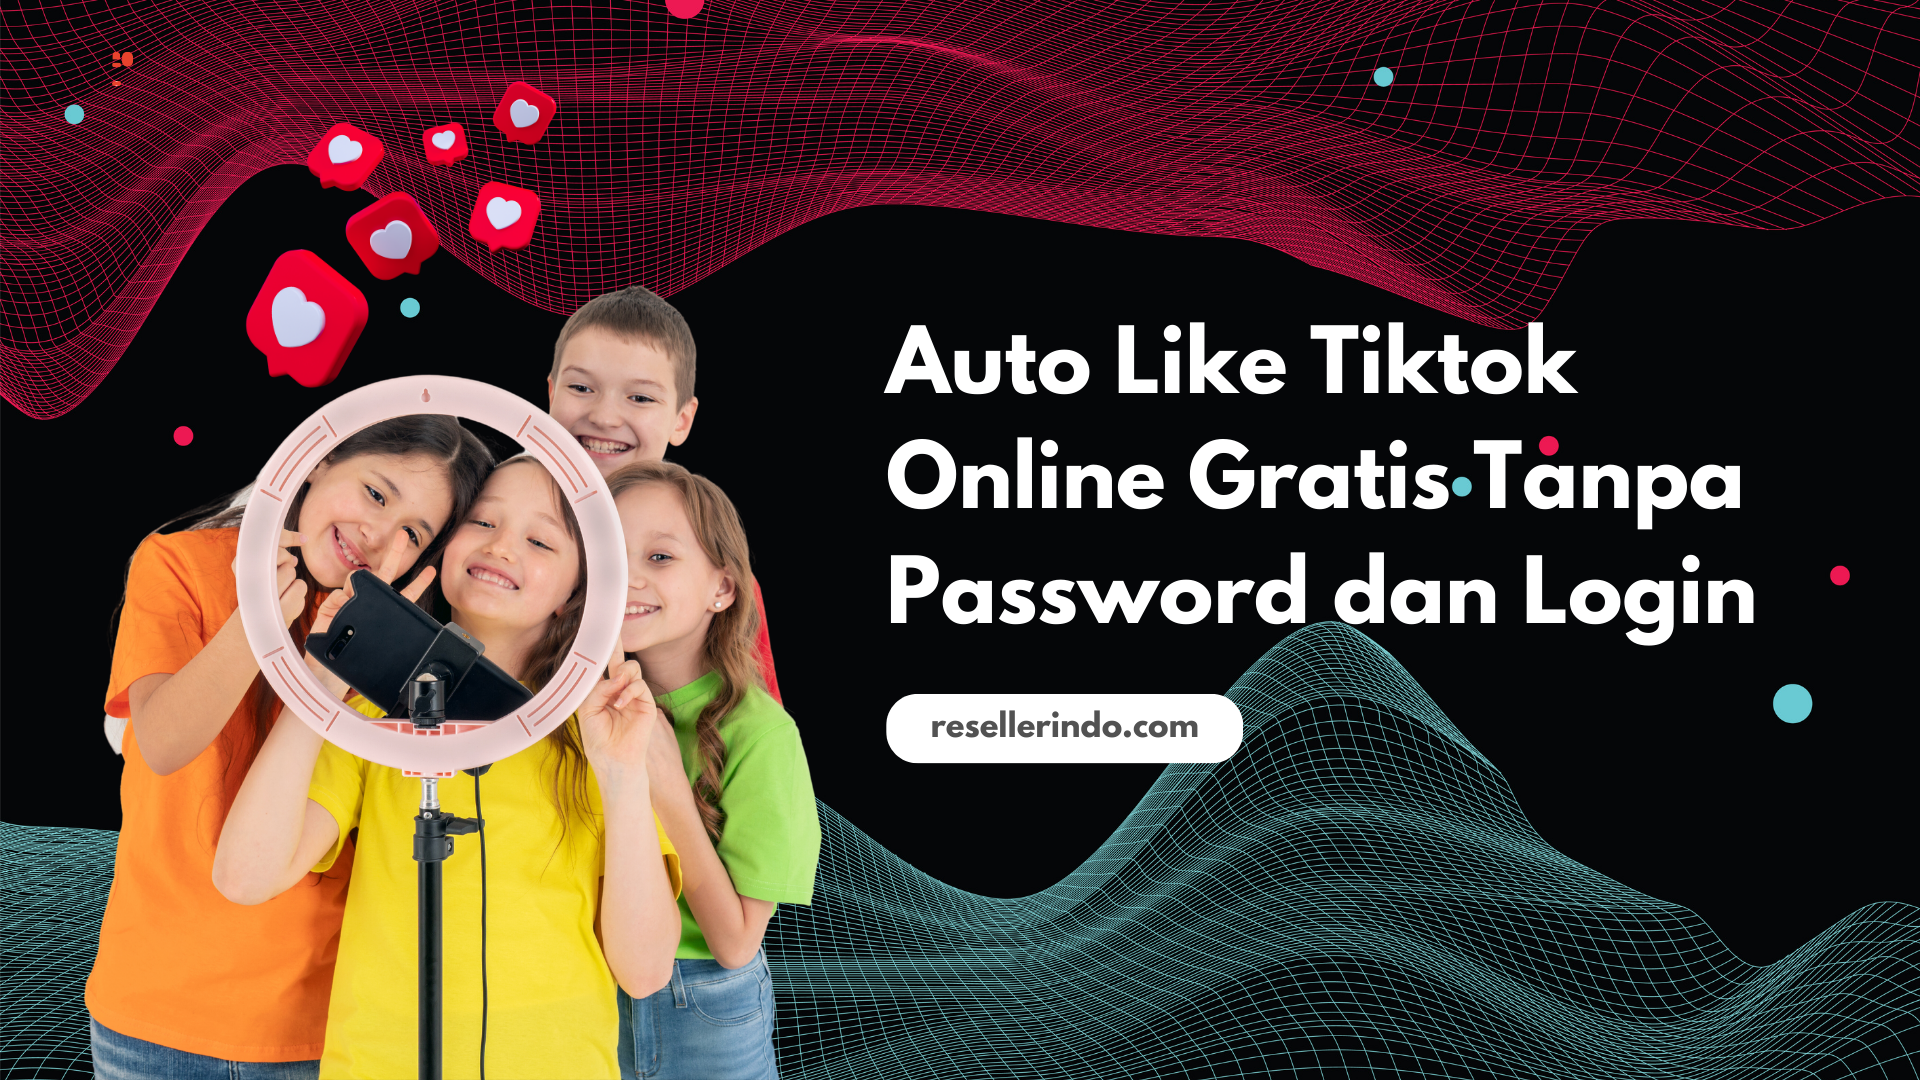 Auto Like Tiktok Online Gratis Tanpa Password dan Login